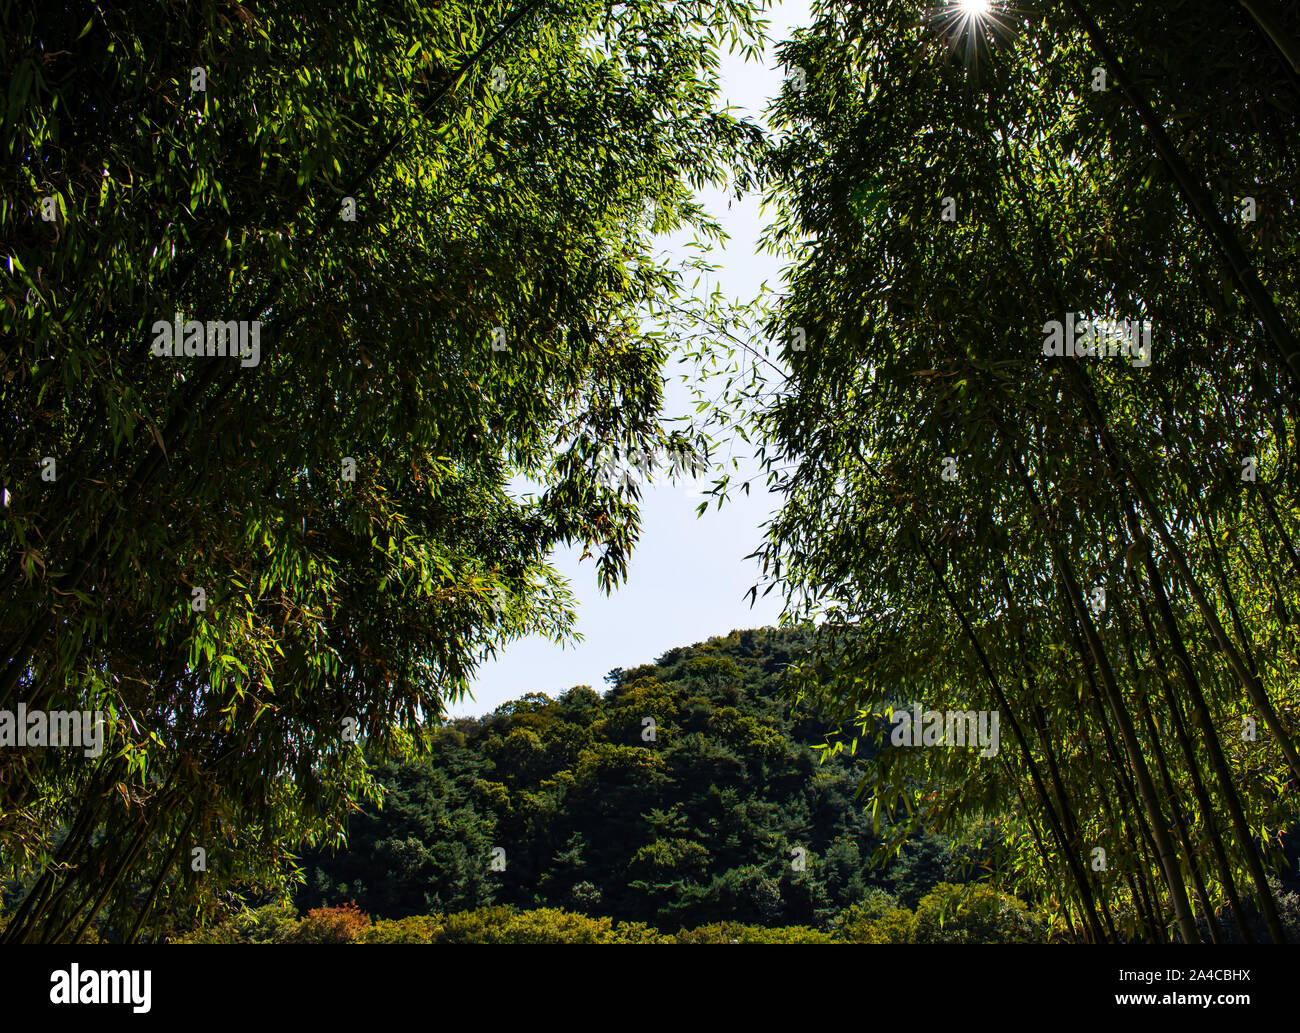 Serena splendide foreste di bambù. Fate una passeggiata attraverso questo tranquillo e magnifico spazio verde, come le torri di bambù sopra di voi. Foto Stock